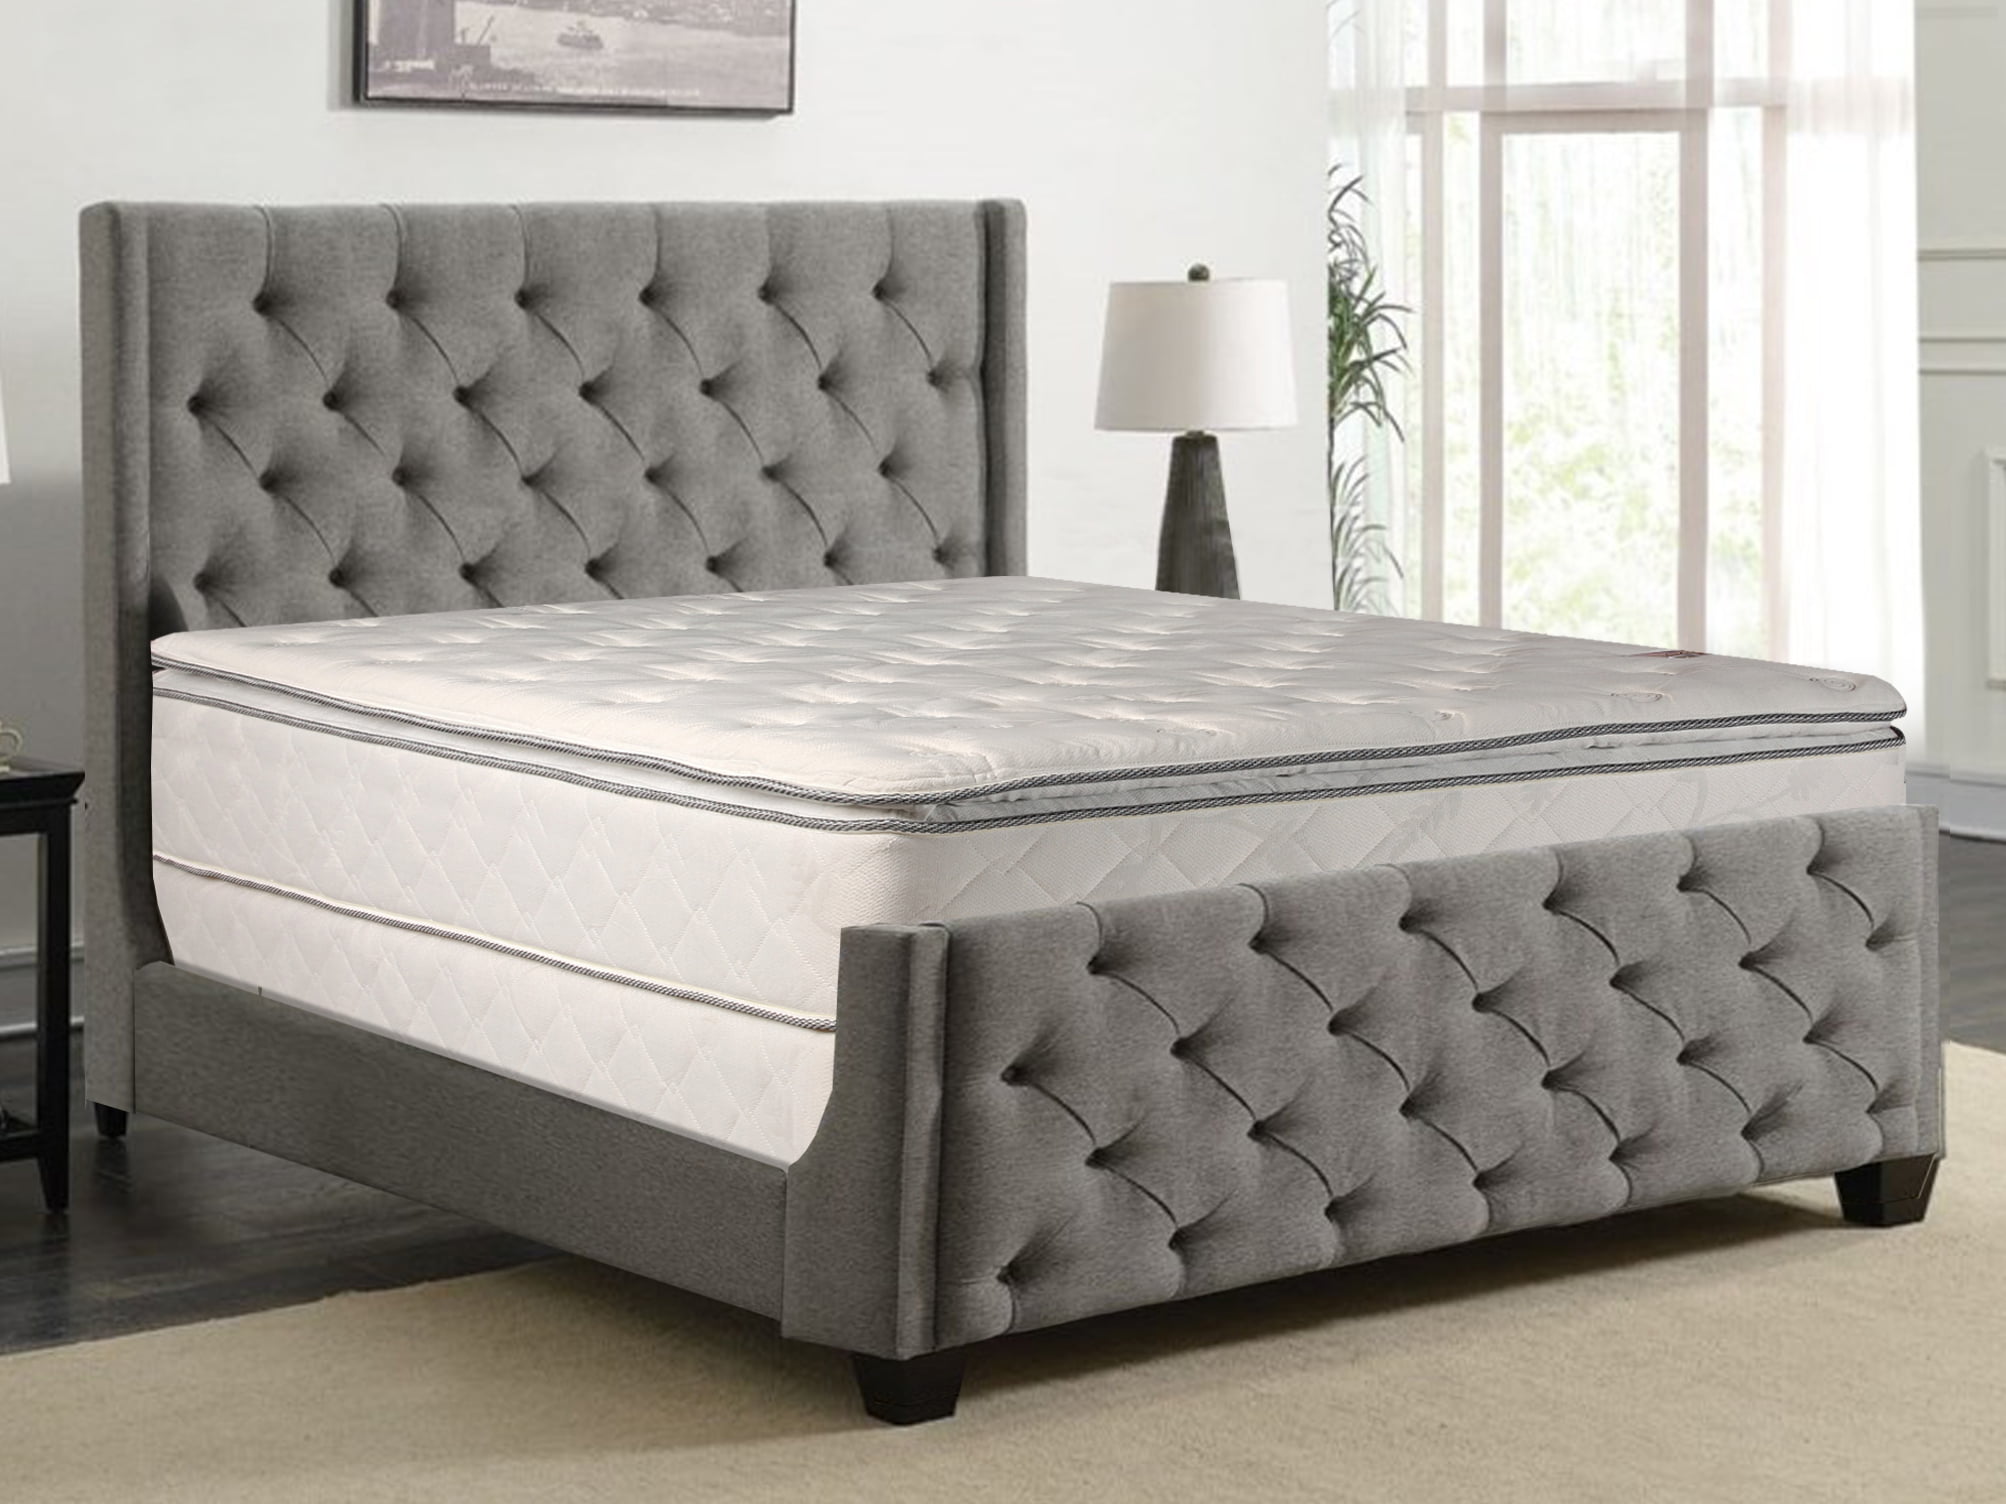 10 firm pillow top innerspring mattress